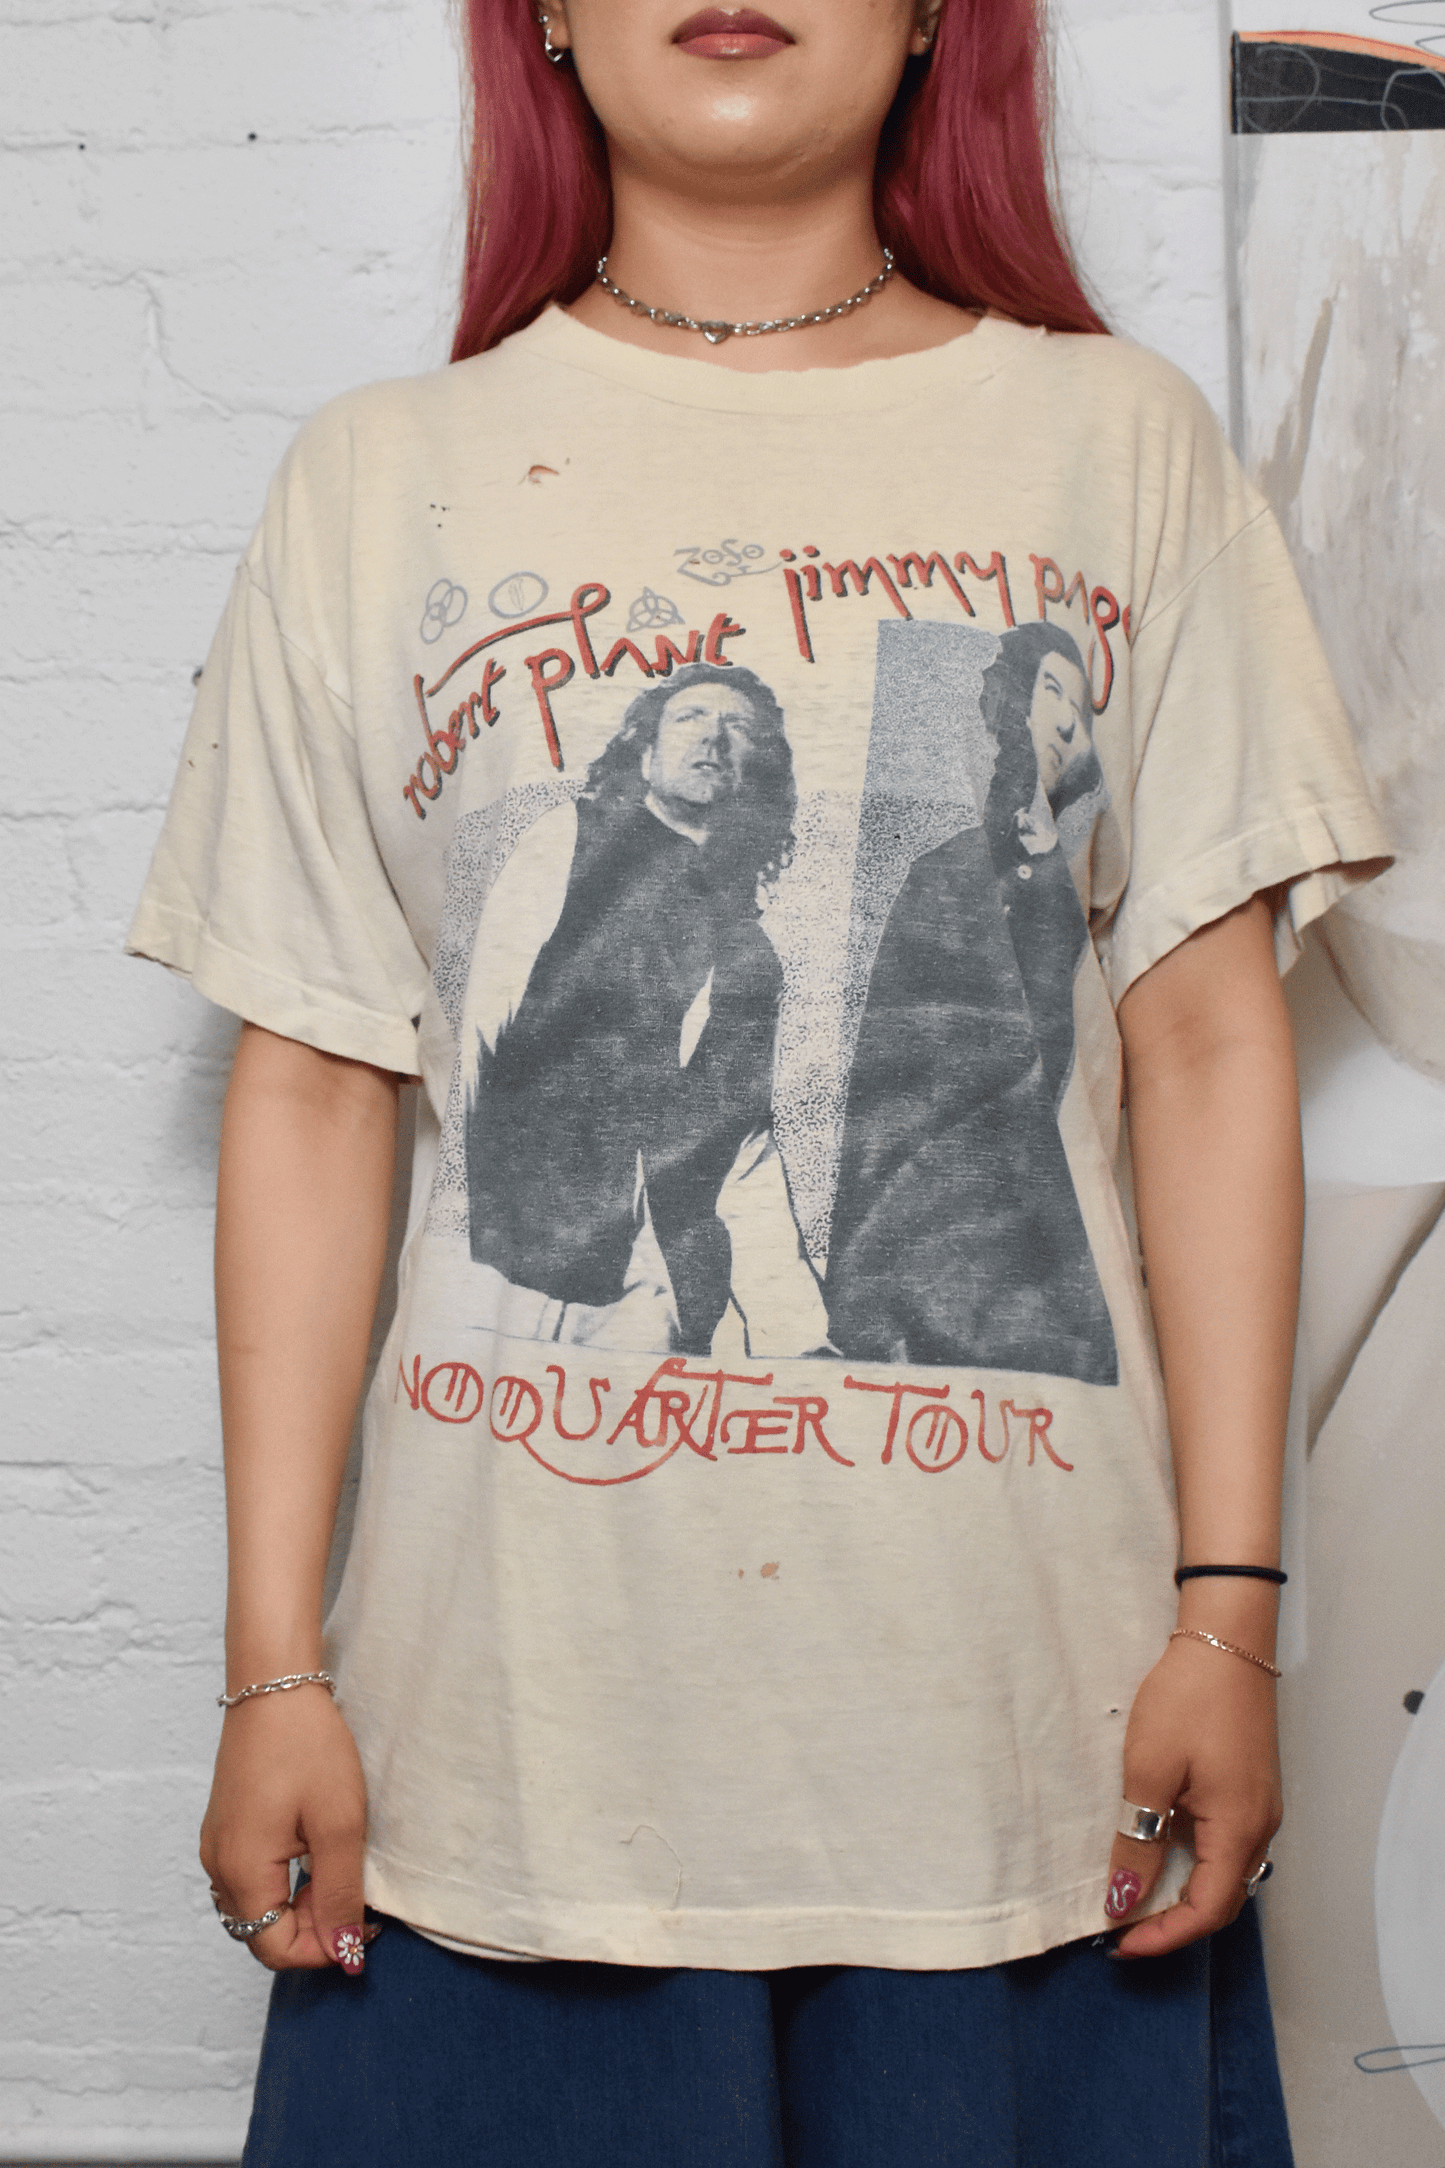 Vintage 1990s "Jimmy Page Robert Plane No Quarter Tour" T-shirt